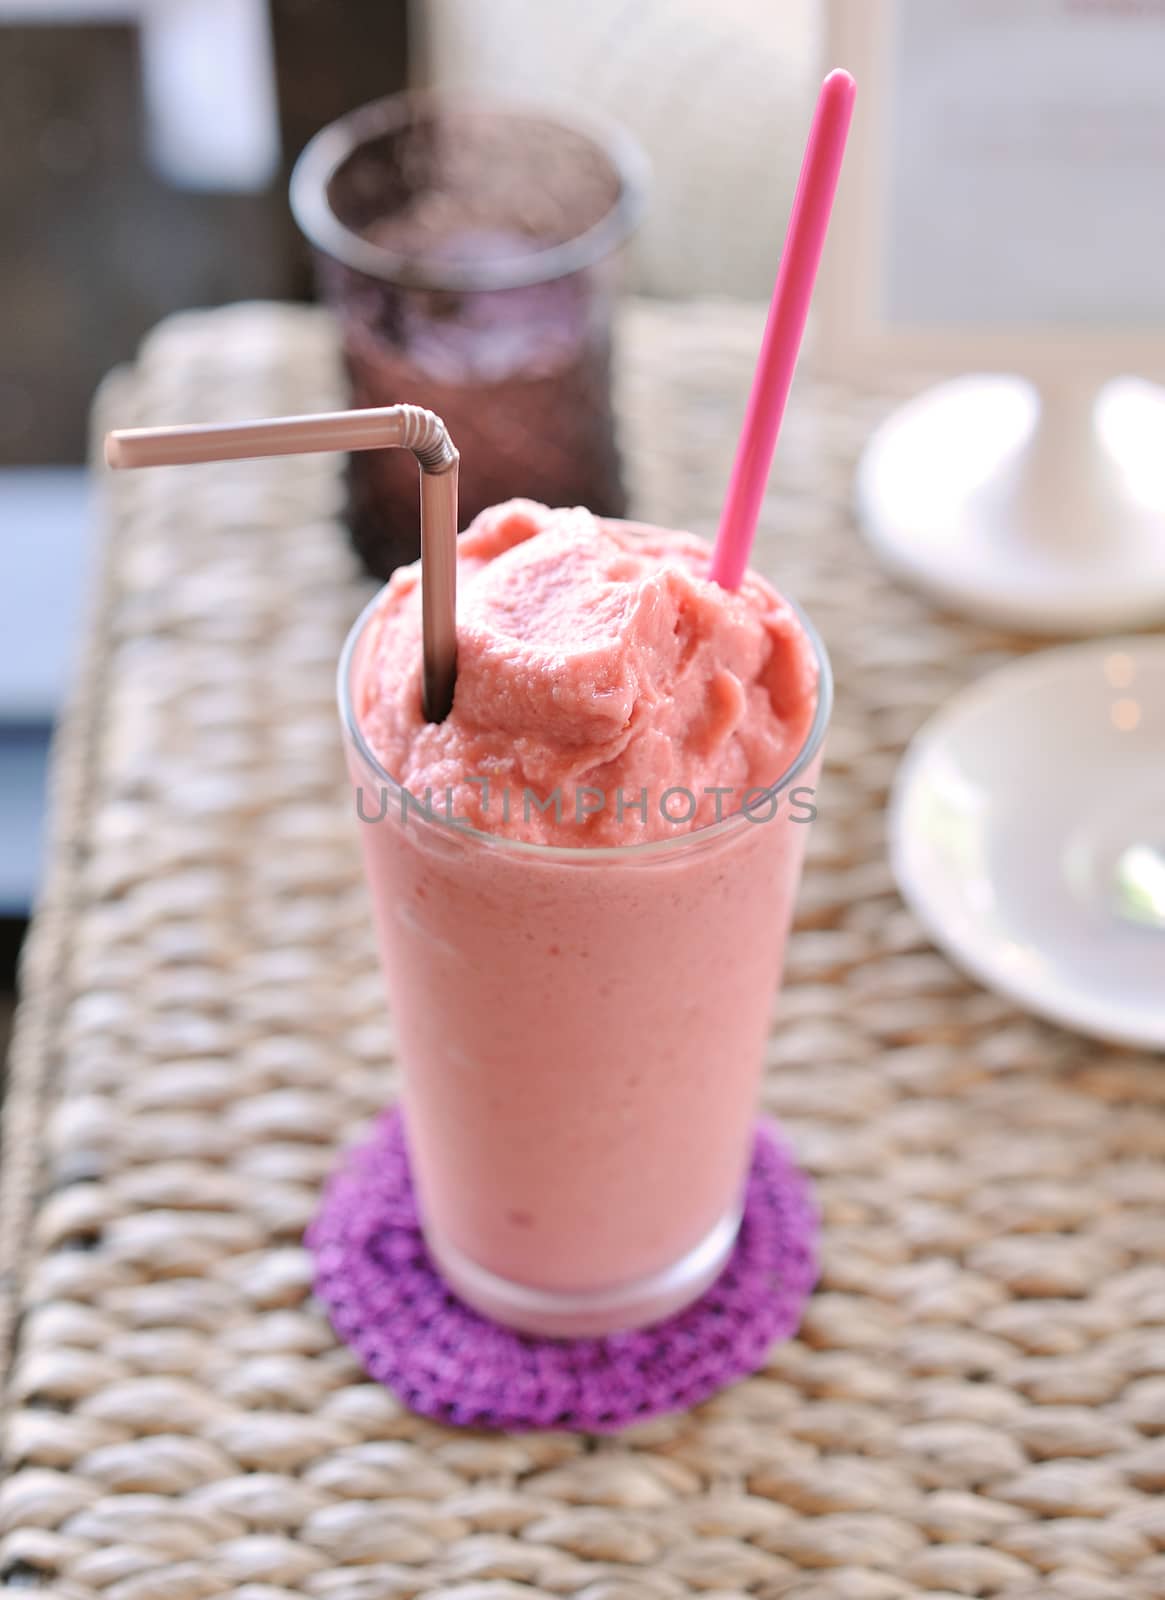 Raspberry-cream smoothie